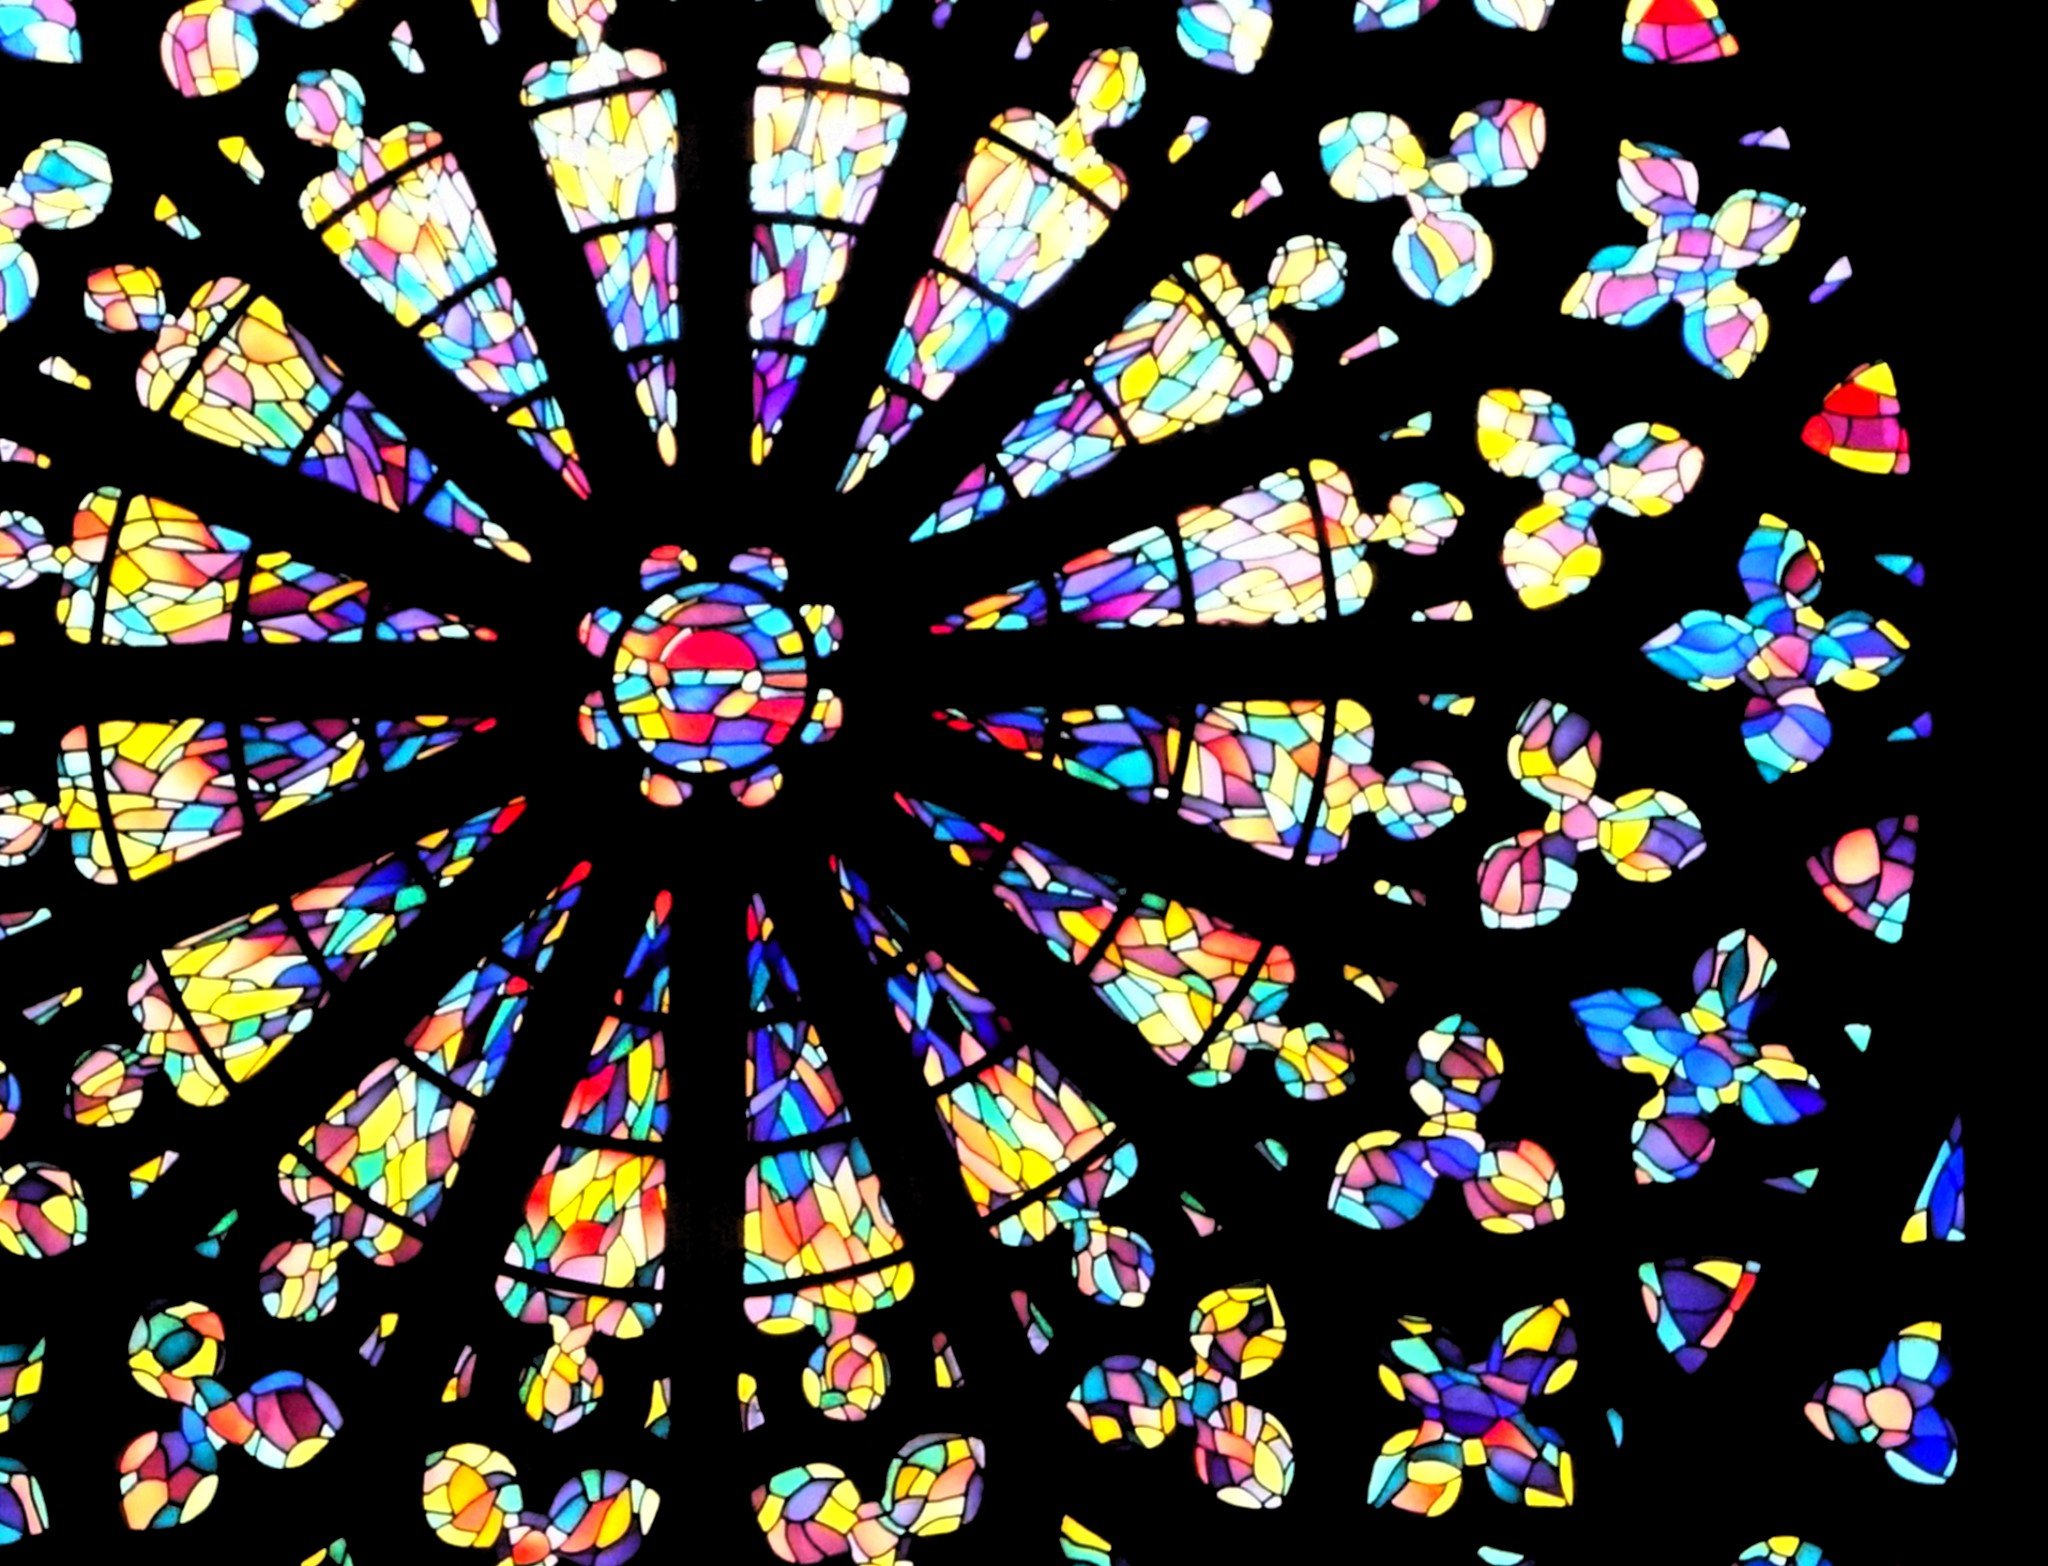 Photo d'un vitrail de type rosace d'une cathédrale gothique, où seul le verre est visible, la pierre étant noire.